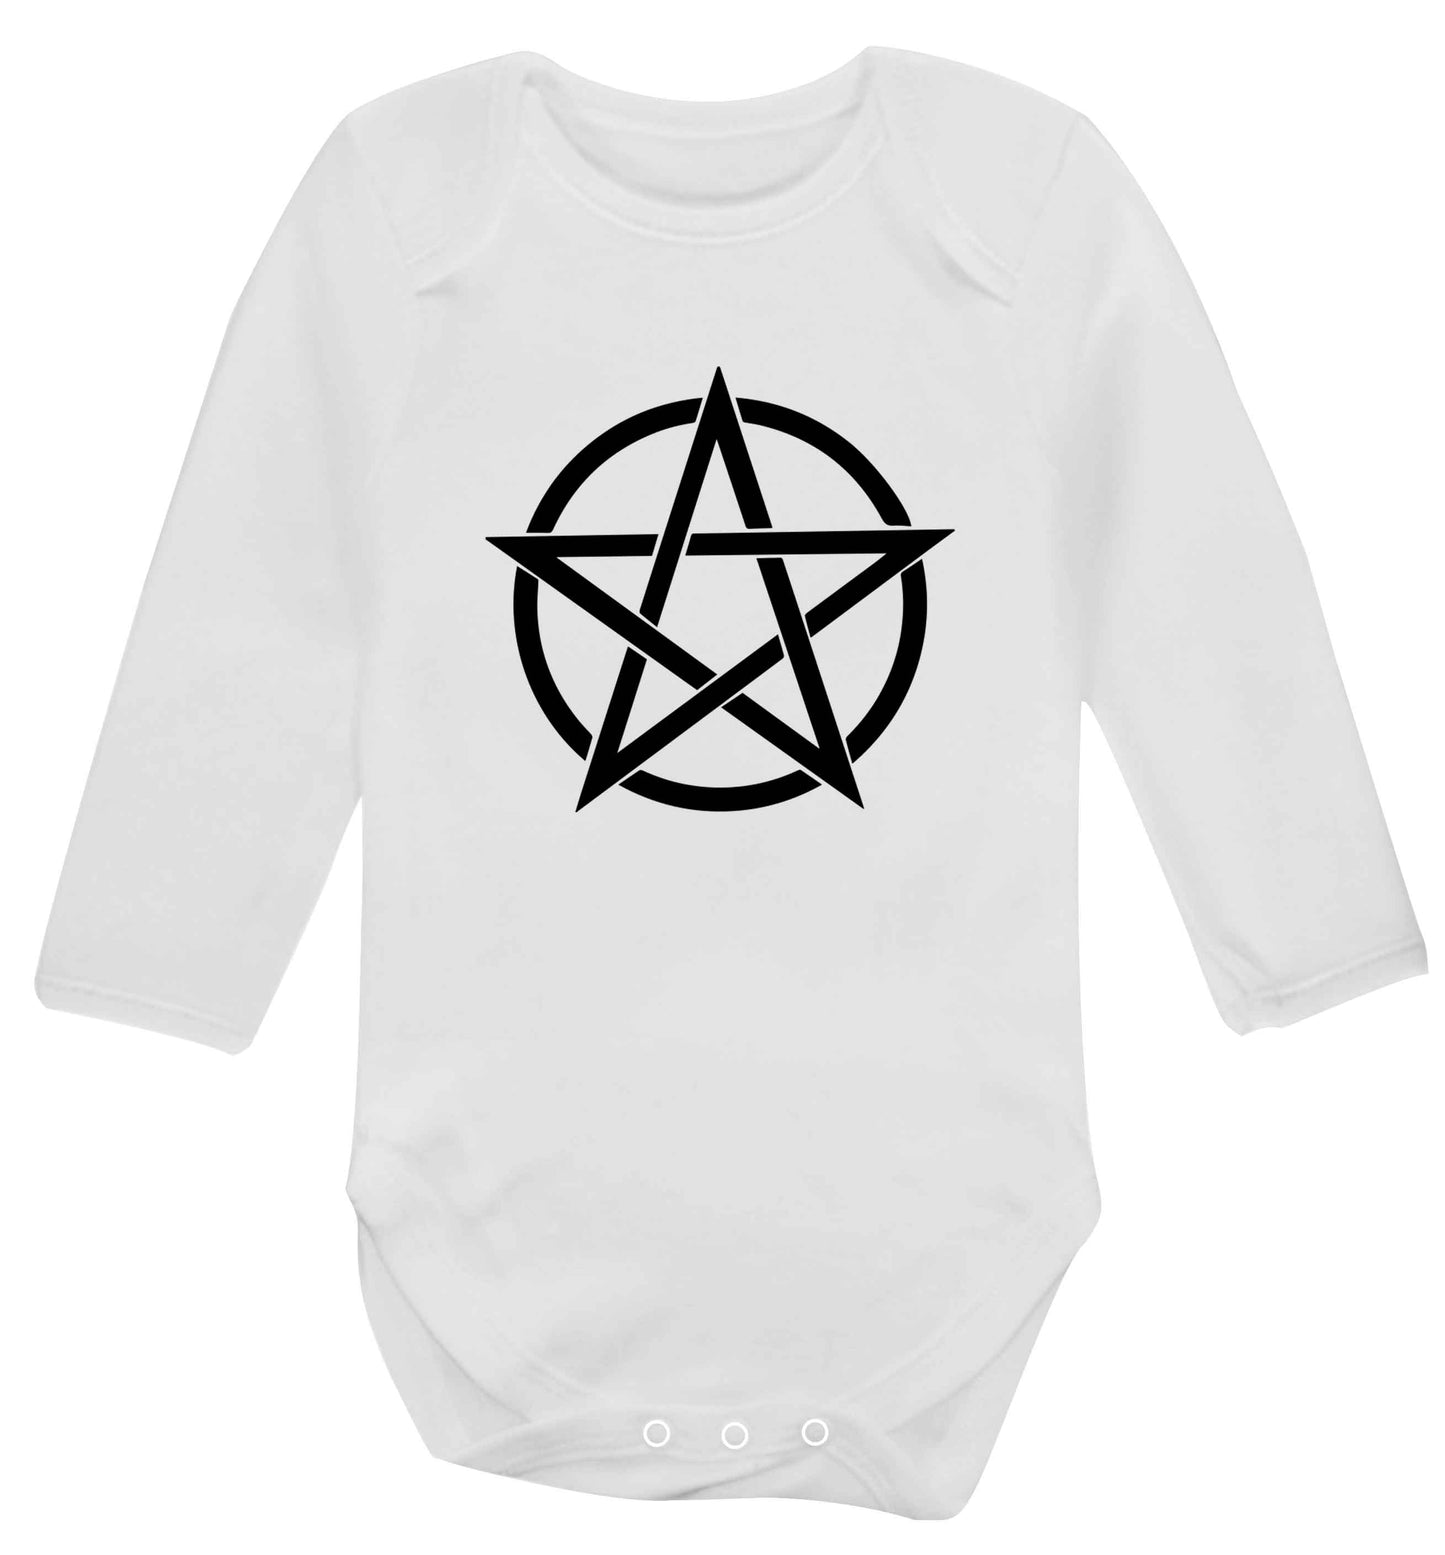 Pentagram symbol baby vest long sleeved white 6-12 months